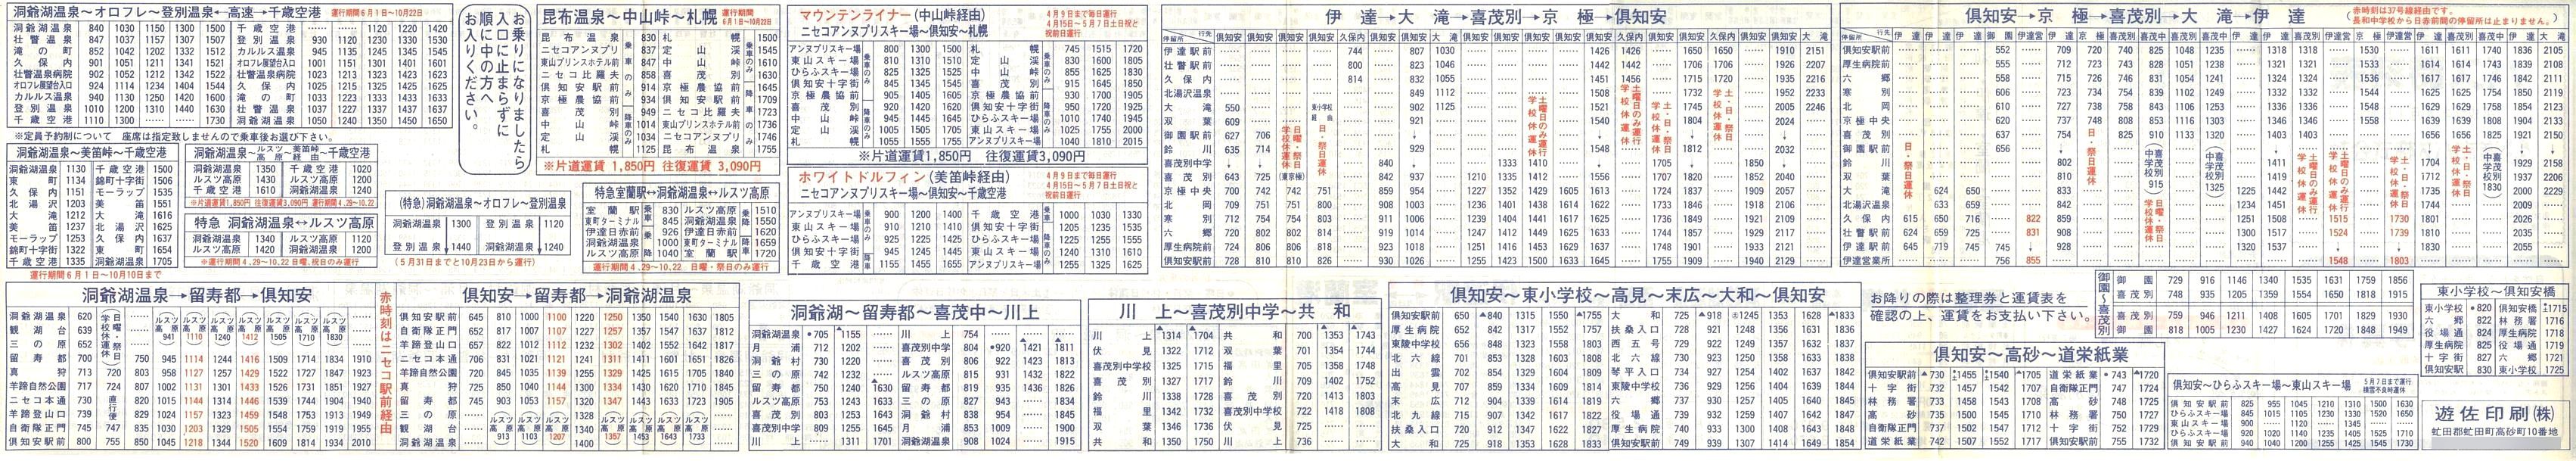 1989-04-01改正_道南バス_洞爺・倶知安管内時刻表裏面